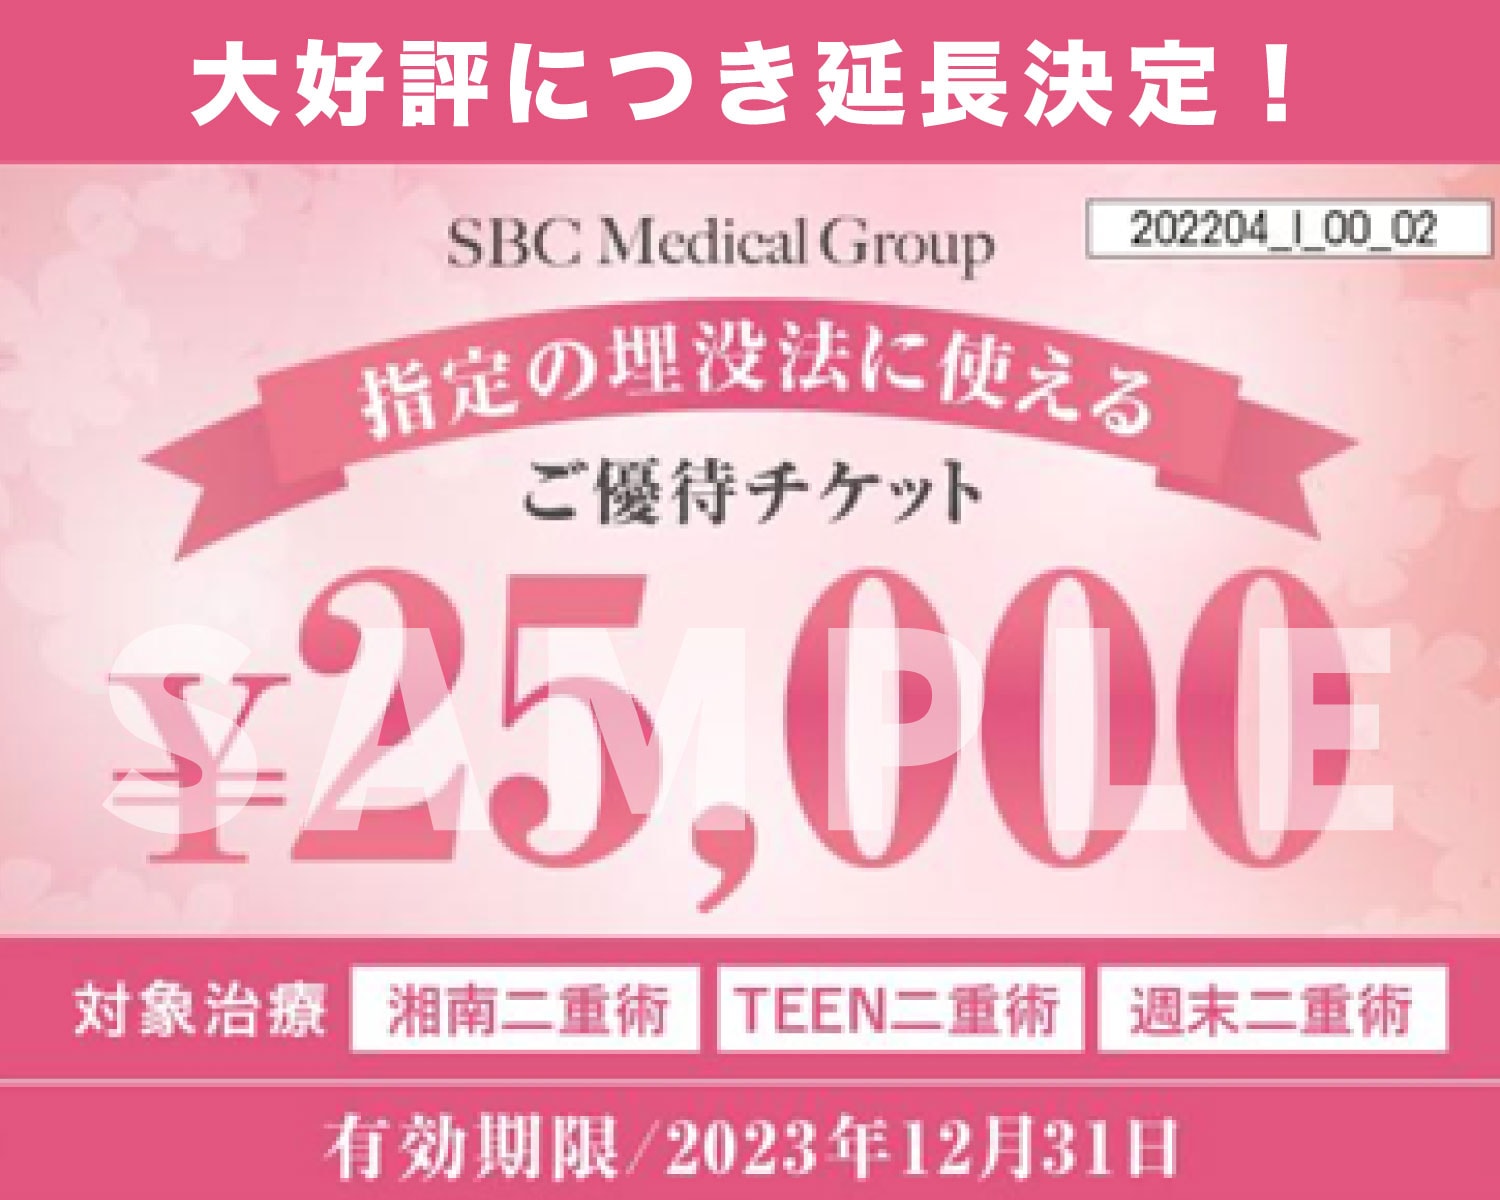 湘南二重・TEEN二重・週末二重に使用出来る25,000円チケットを配布中！<br />
